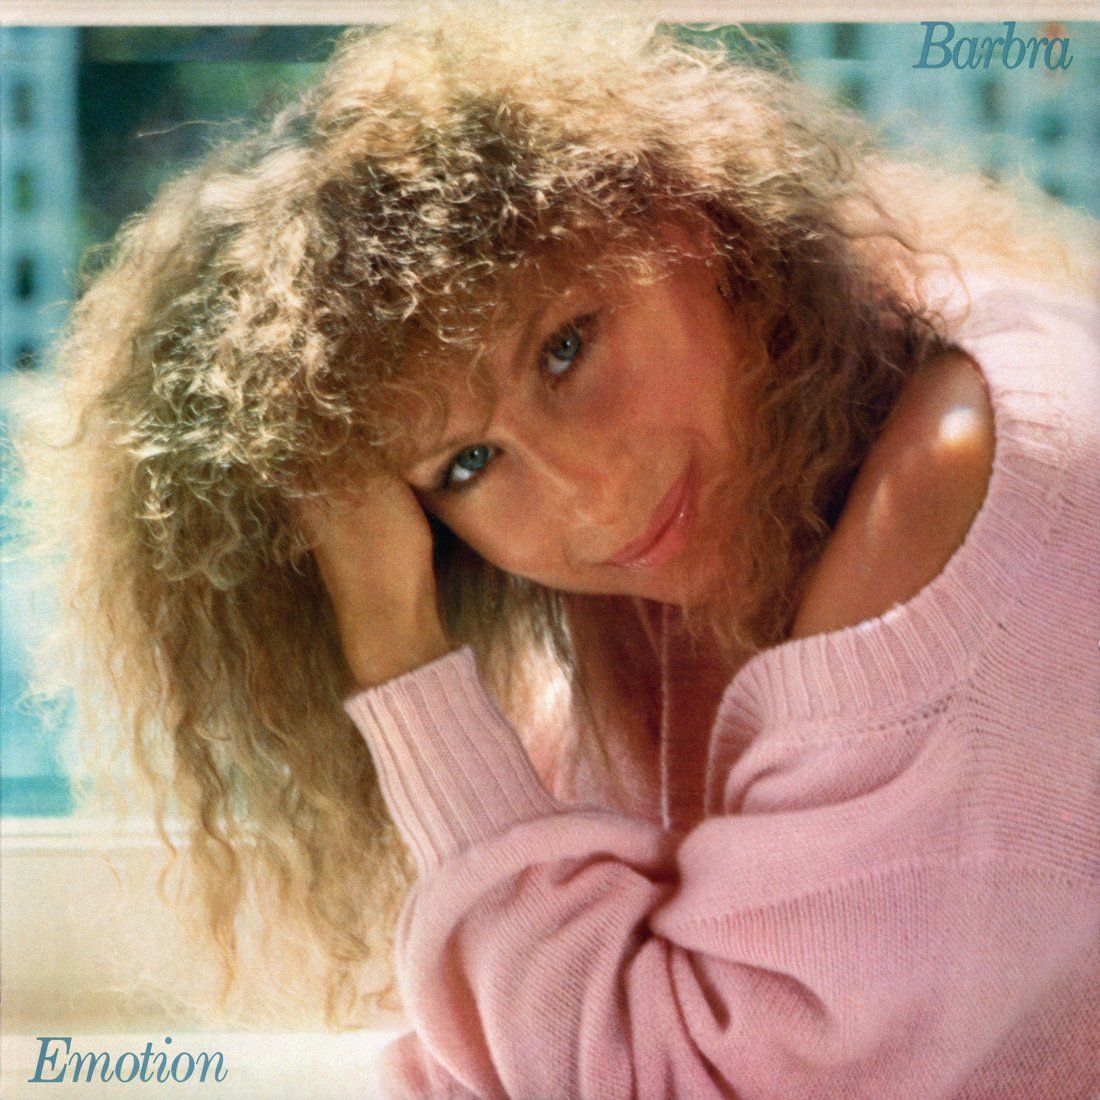 Emotion original album cover, scan by Kevin Schlenker.